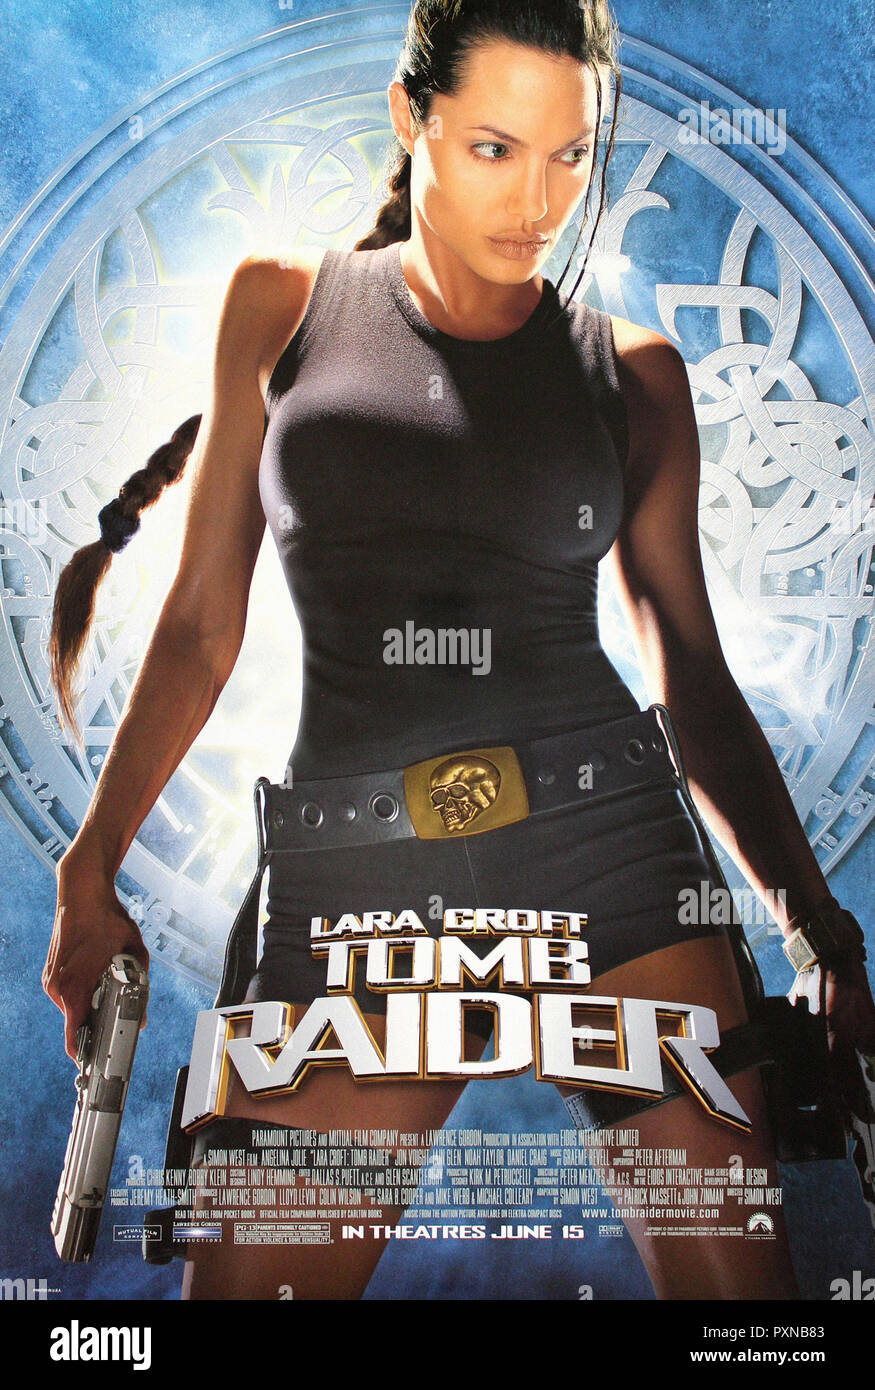 Lara Croft: Tomb Raider / Lara Croft Tomb Raider: The Cradle of Life  Original 2003 U.S. Mini Movie Poster Set of 2